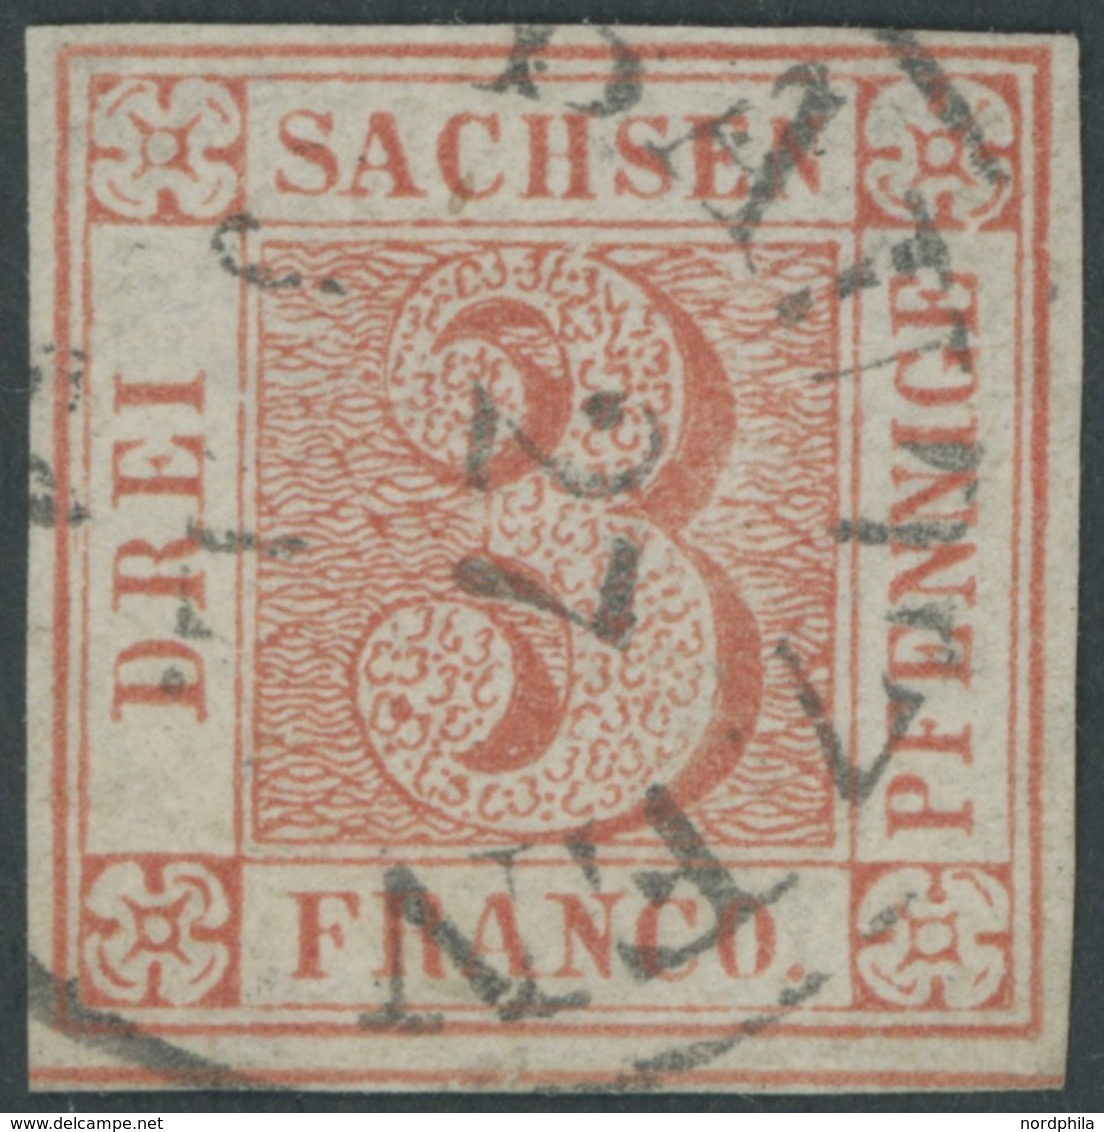 SACHSEN 1a O, 1850, 3 Pf. Rot, Platte VI, Feld 13, K1 BAUTZEN, Kleine Rückseitige Mängel Behoben Sonst Farbfrisches Prac - Saxony